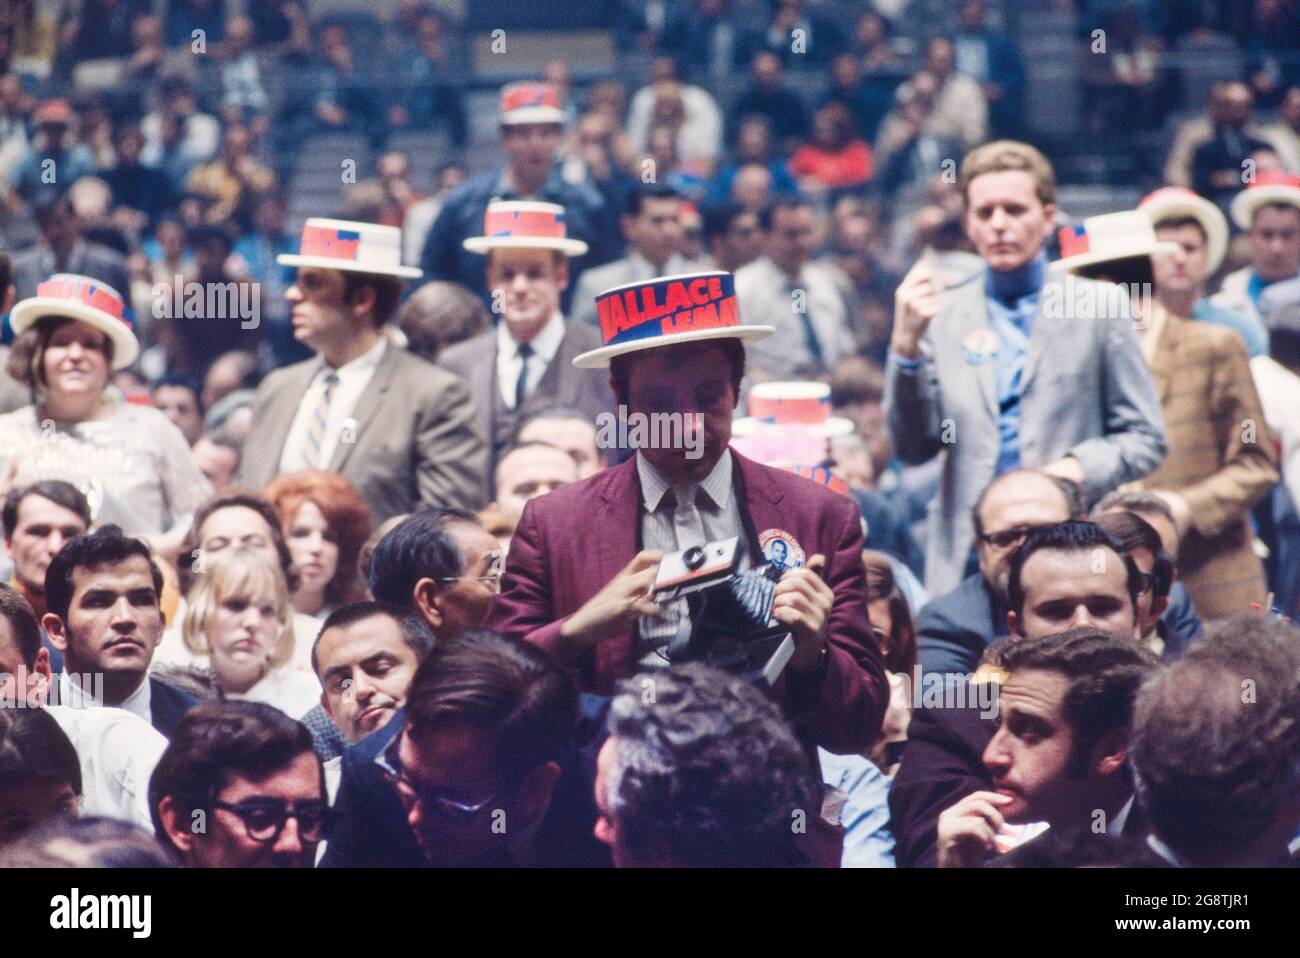 Rassemblement de la campagne présidentielle George Wallace, Madison Square Garden, New York, New York, États-Unis, Bernard Gotfryd, octobre 24,1968 Banque D'Images